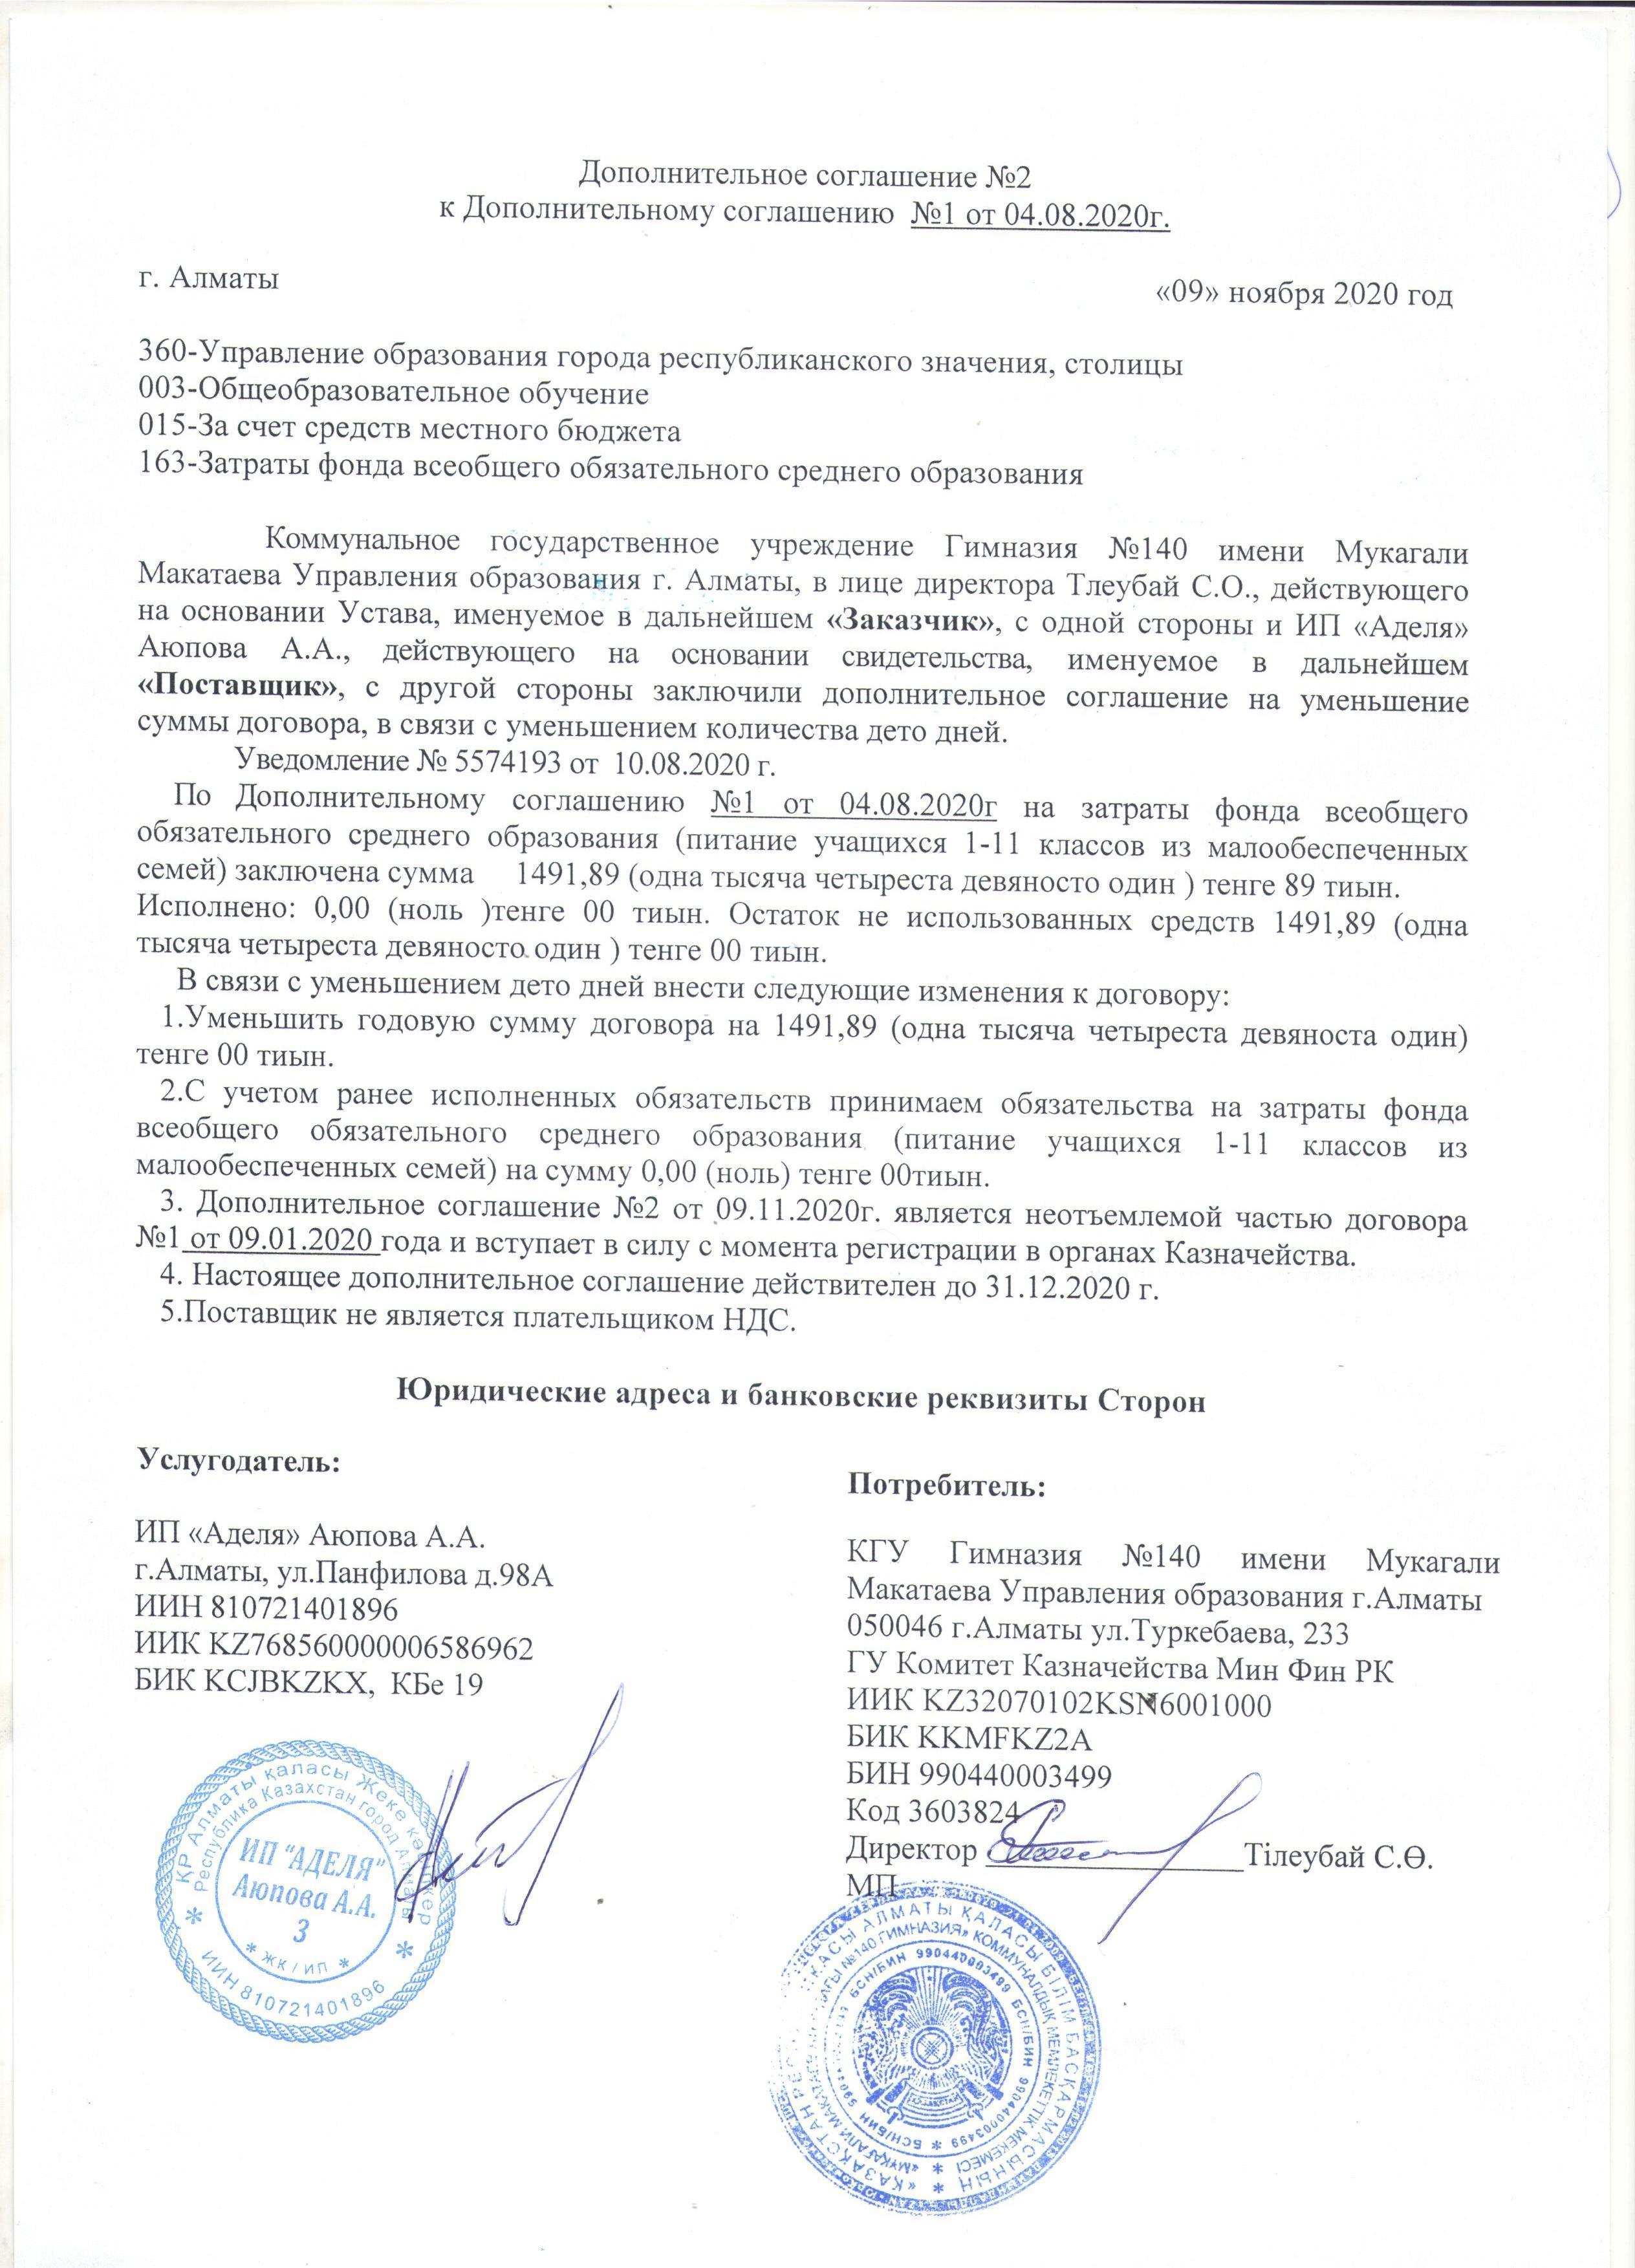 Дополнительное соглашение №2 к Дополнительному соглашению №1 от 04.08.2020 г